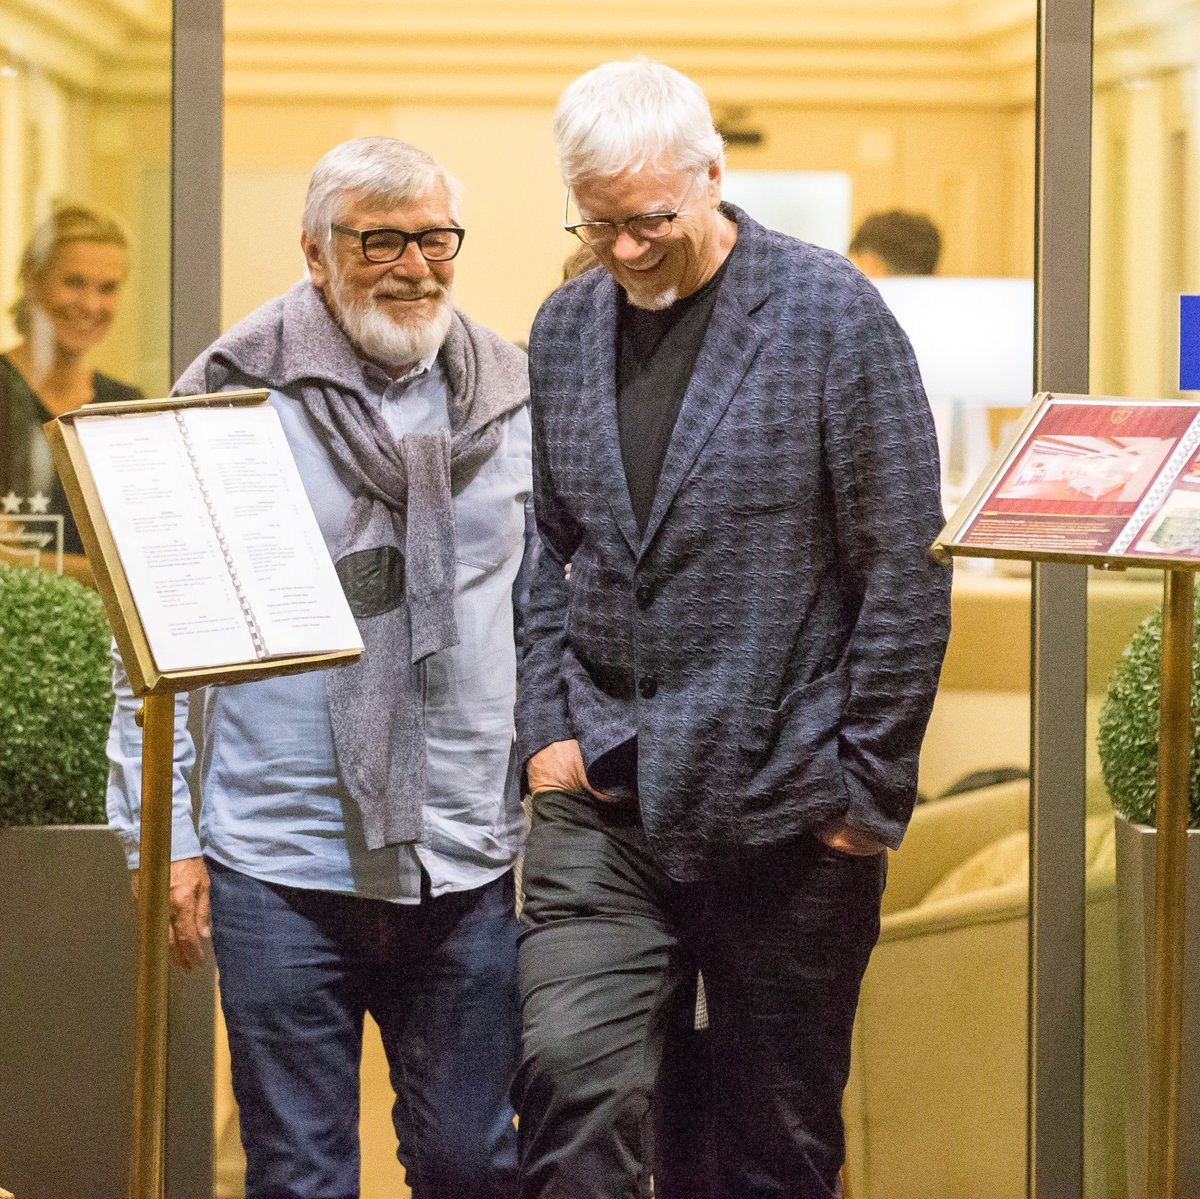 Tim Robbins povečeřel s ředitelem festivalu Jiřím Bartoškou a očividně si padli do noty. Bavili se spolu až dlouho přes půlnoc, než se odebrali do Grandhotelu Pupp